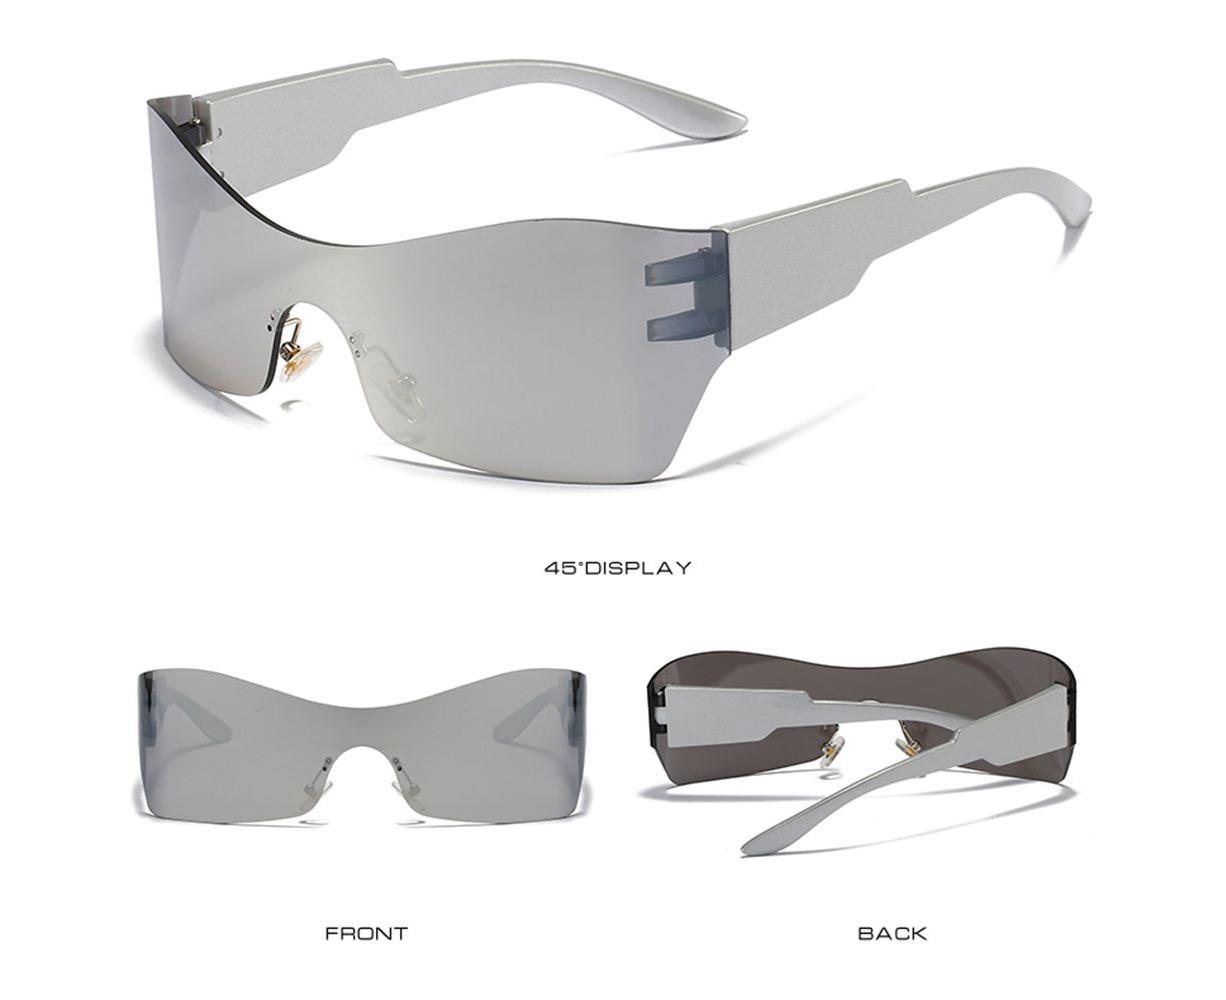 Sunglasses Plastic Frame Goggles UV sun glass Men Women Stylish